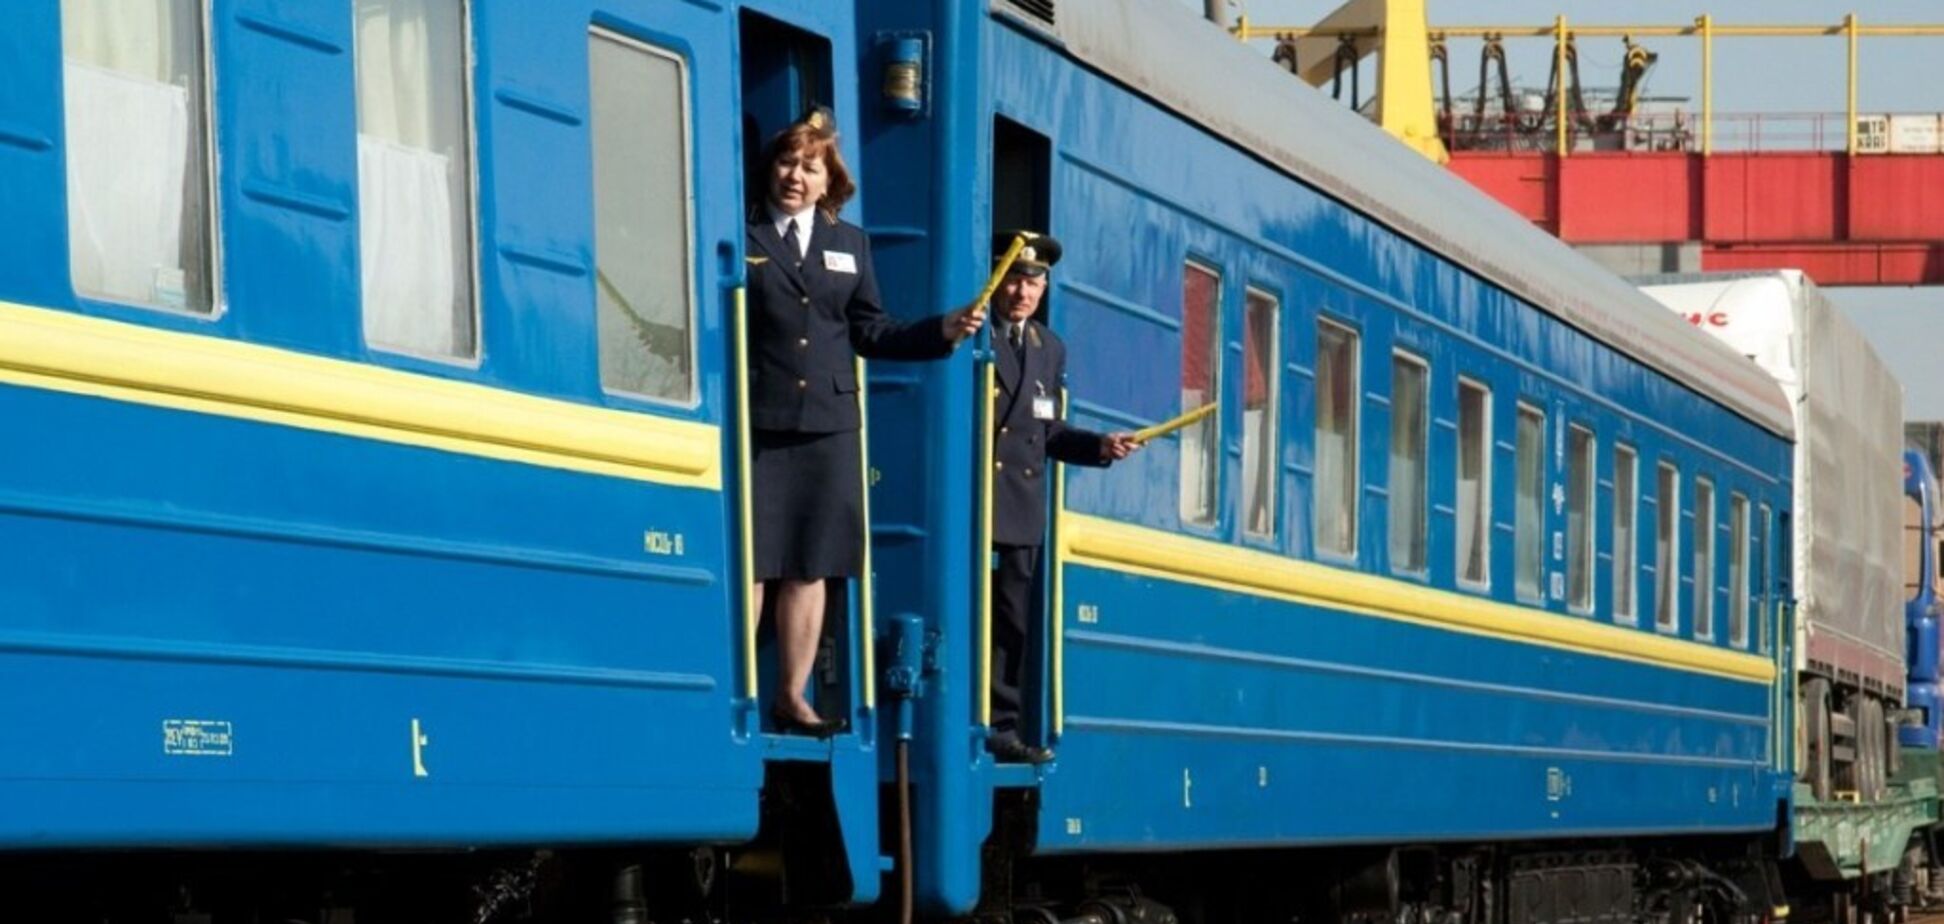 Пасажири показали жахи європотягу 'Укрзалізниці'